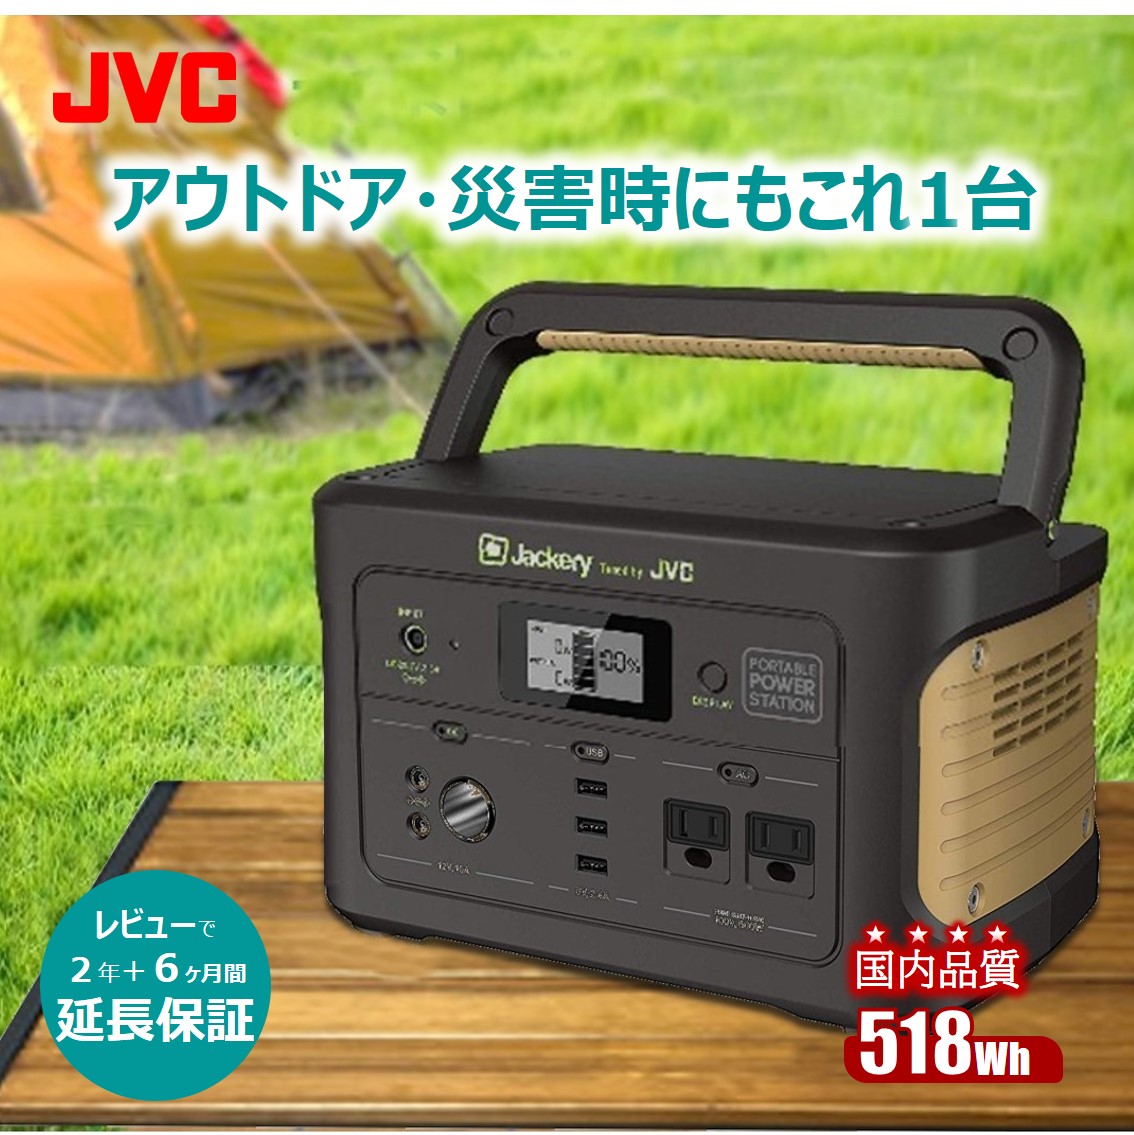 JVC JVCケンウッド ポータブル電源 BN-RB5-C